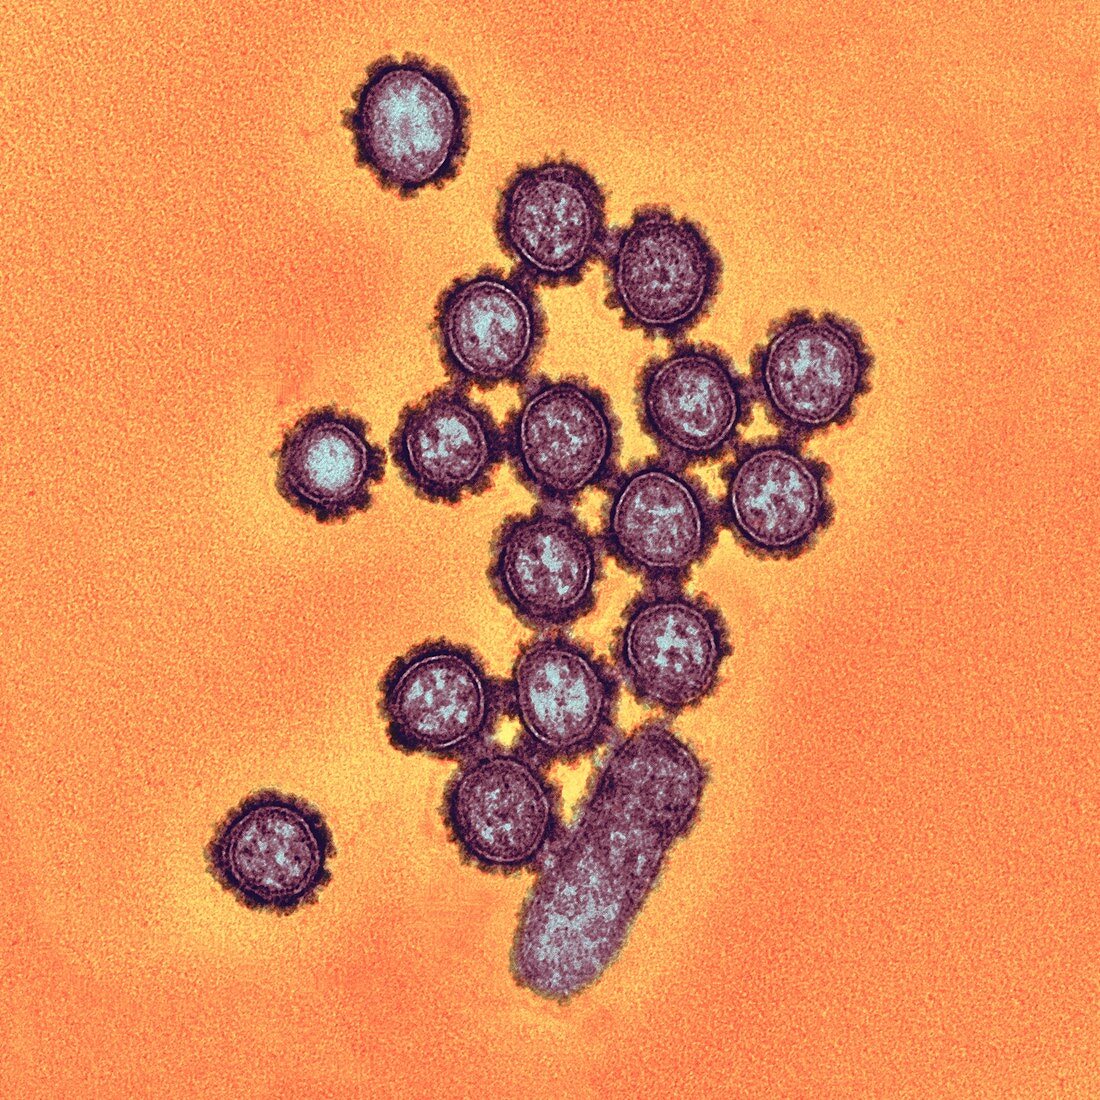 H1N1 flu virus particles,TEM